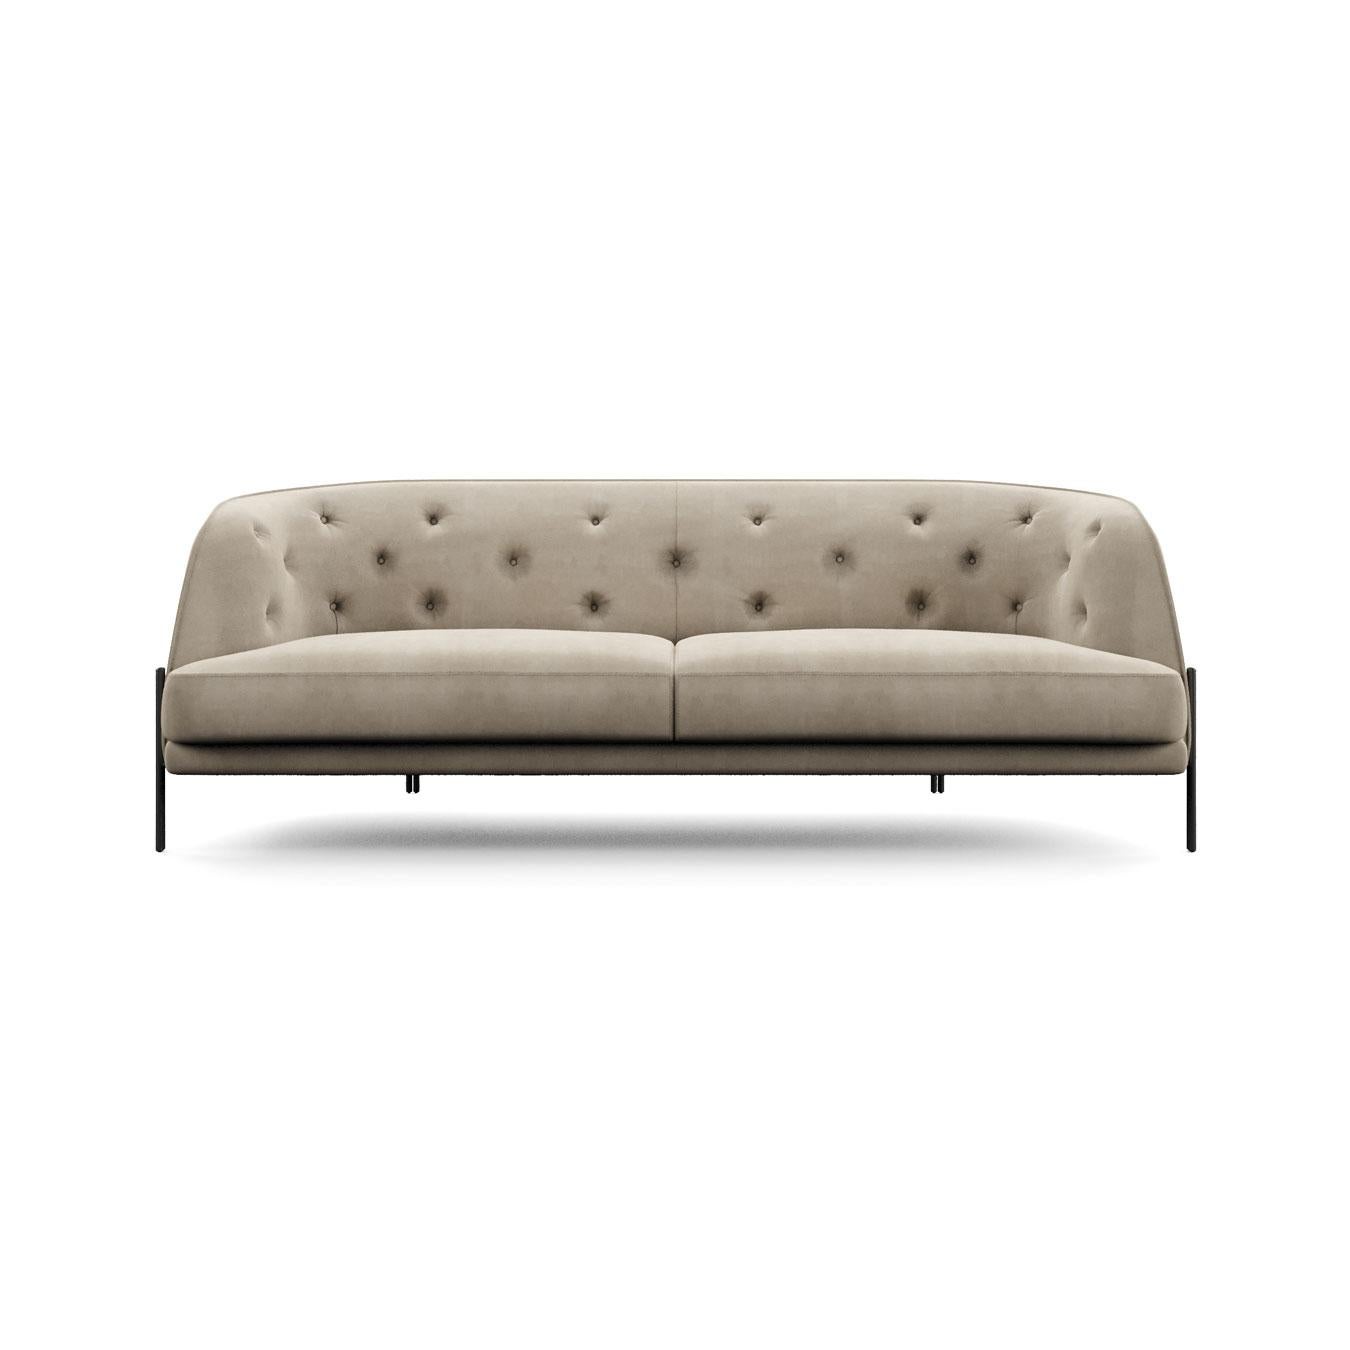 Ein elegantes Sofa, das seine persönliche Note durch klare, weiche Linien erhält.

Die abgerundeten Formen, die sorgfältigen Details und die raffinierten Oberflächen machen ihn in der Capitonné̀-Version noch leichter und raffinierter.